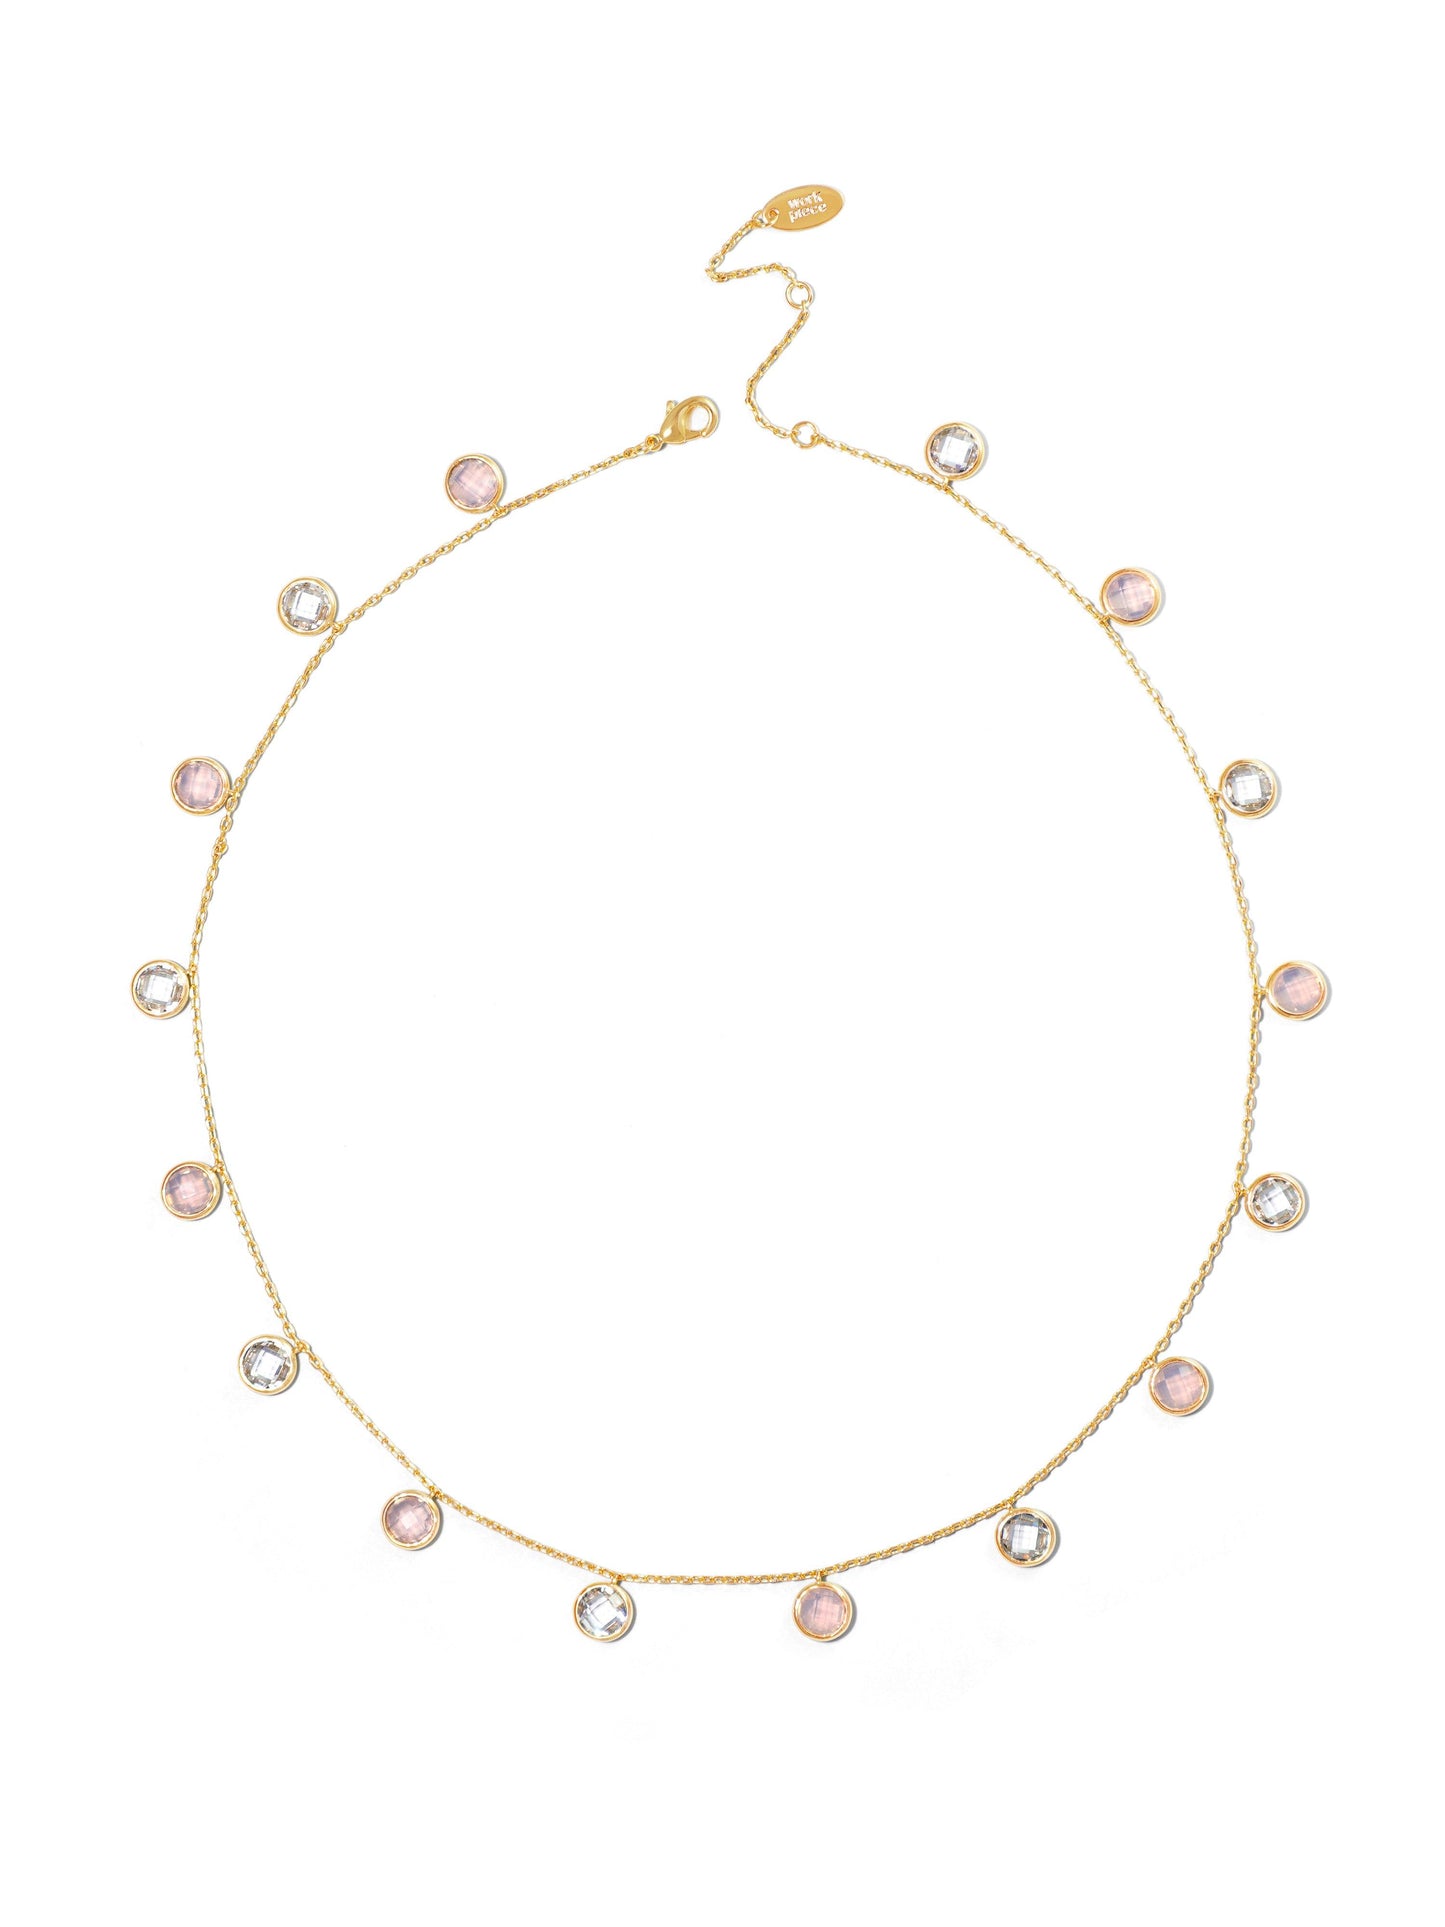 Blush Pink Necklace #1 - Work Piece